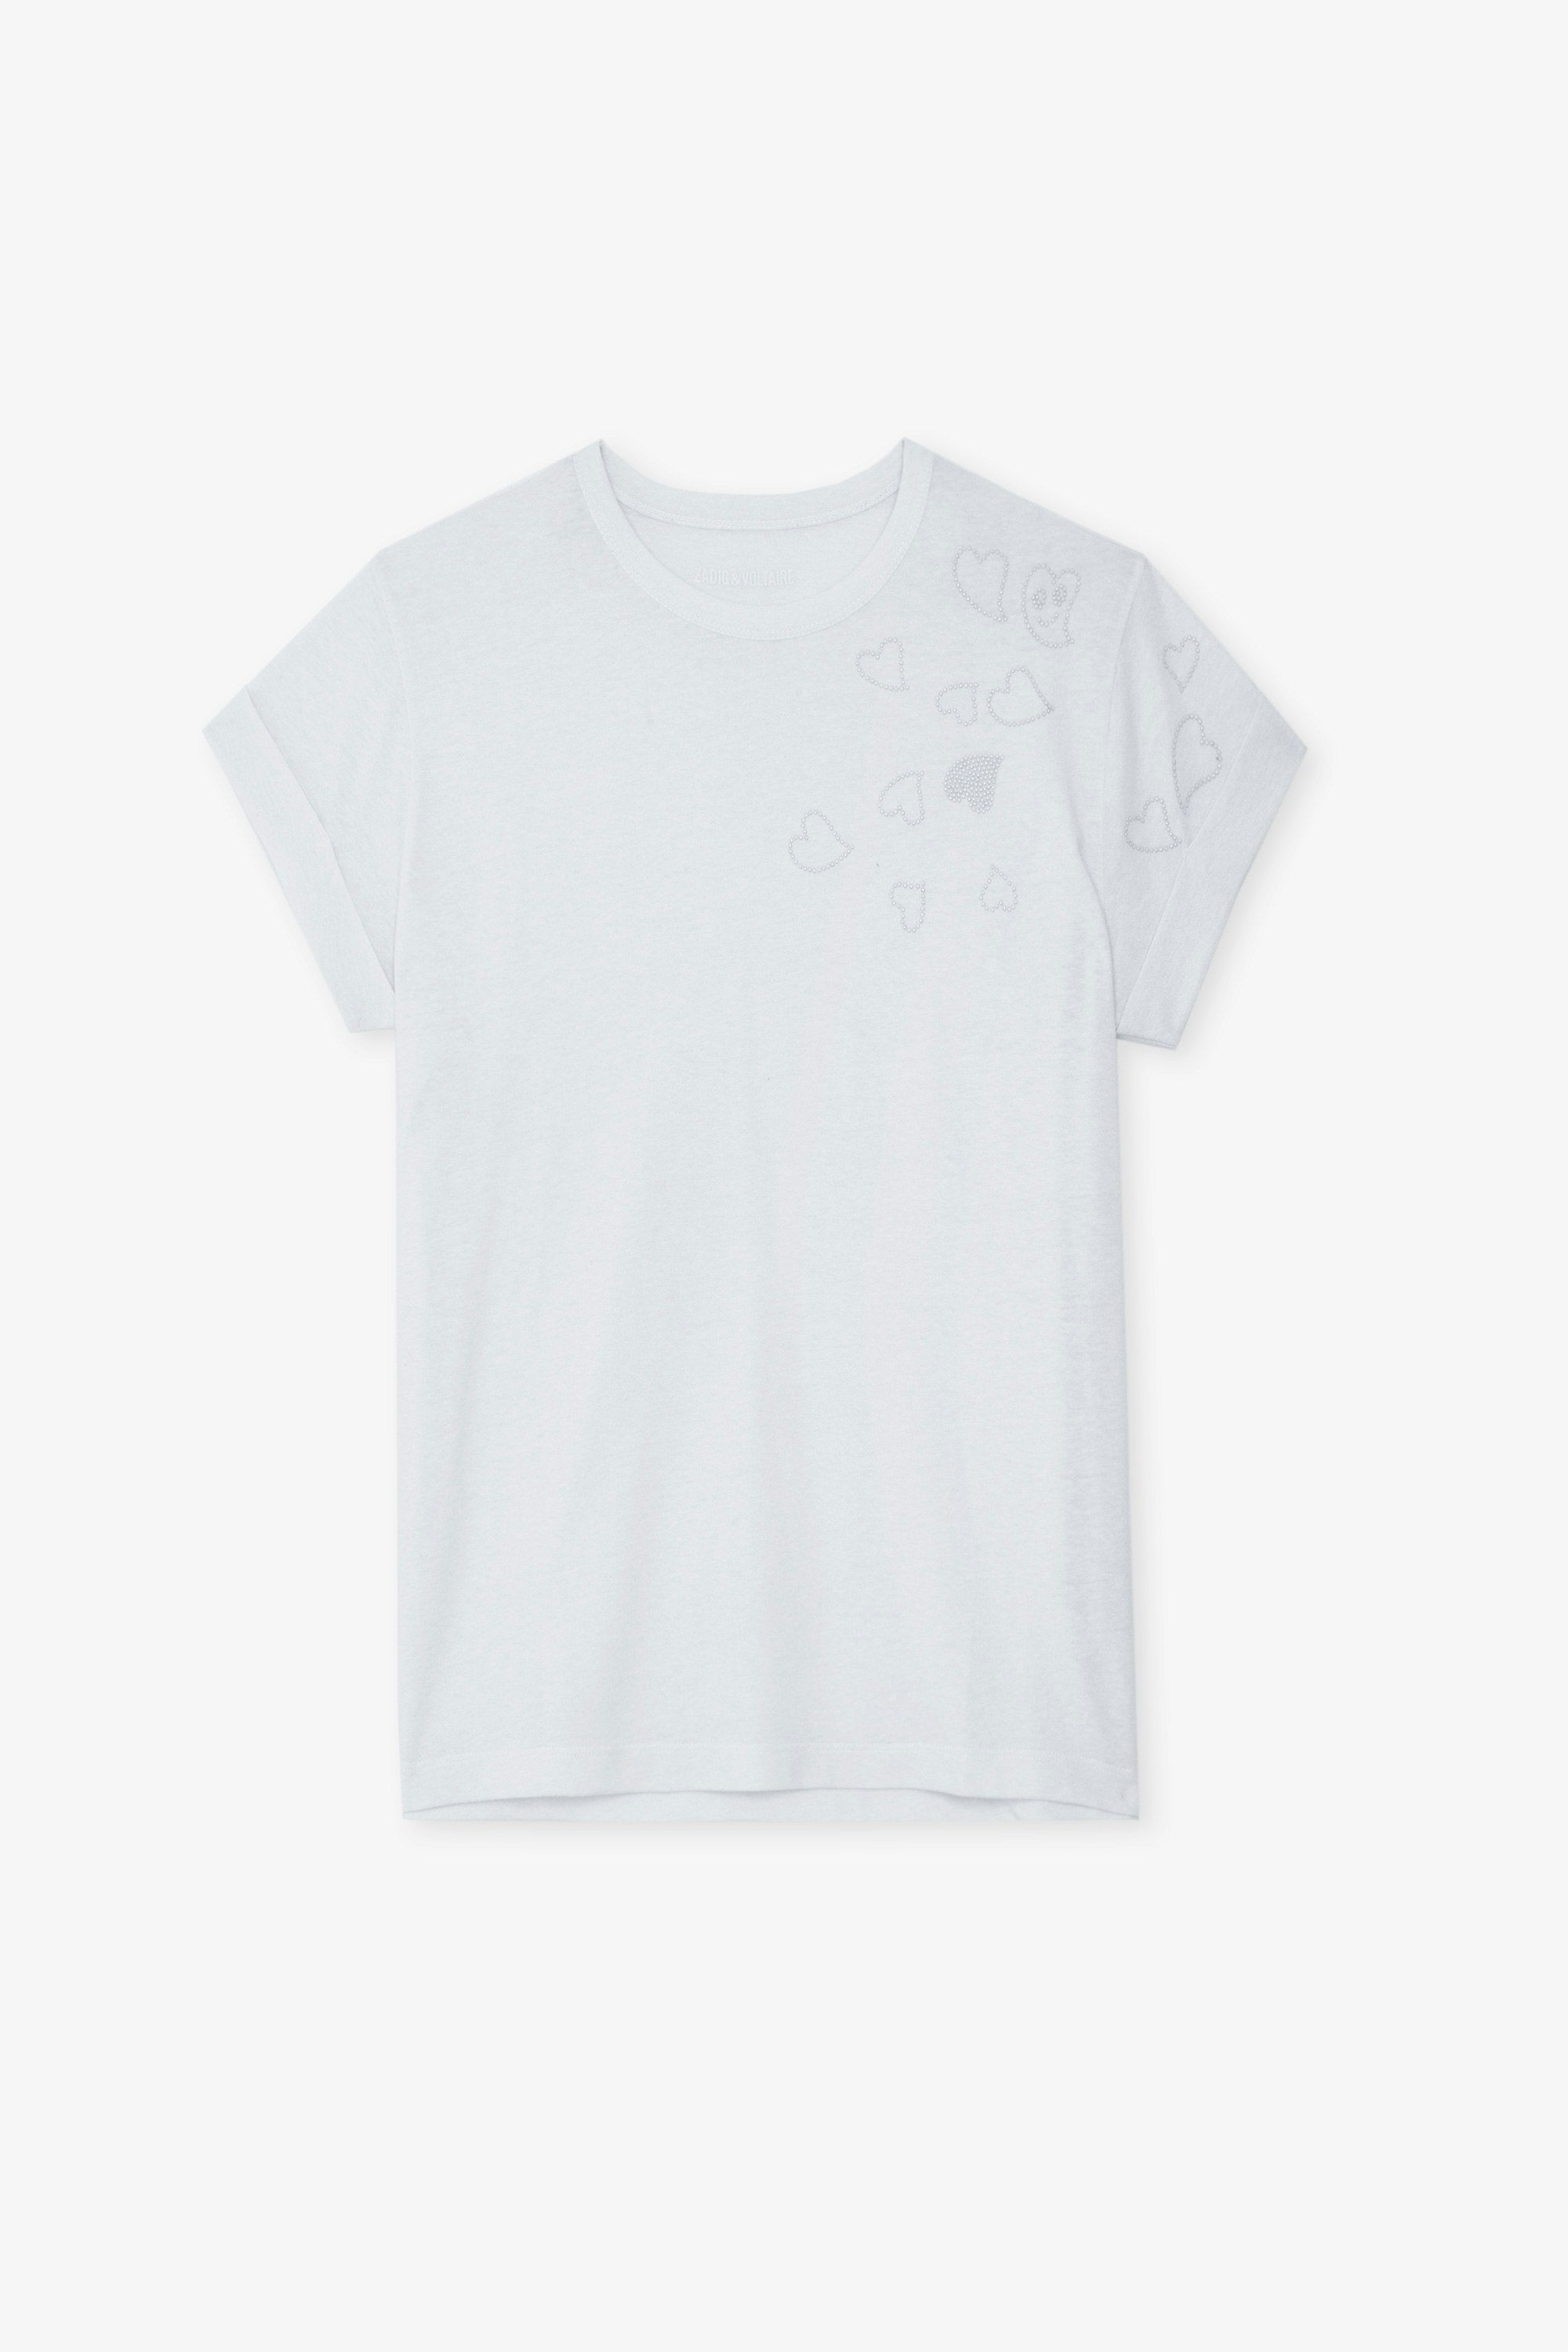 Camiseta Anya - Camiseta blanca con cuello redondo, mangas cortas y tachuelas de corazones.